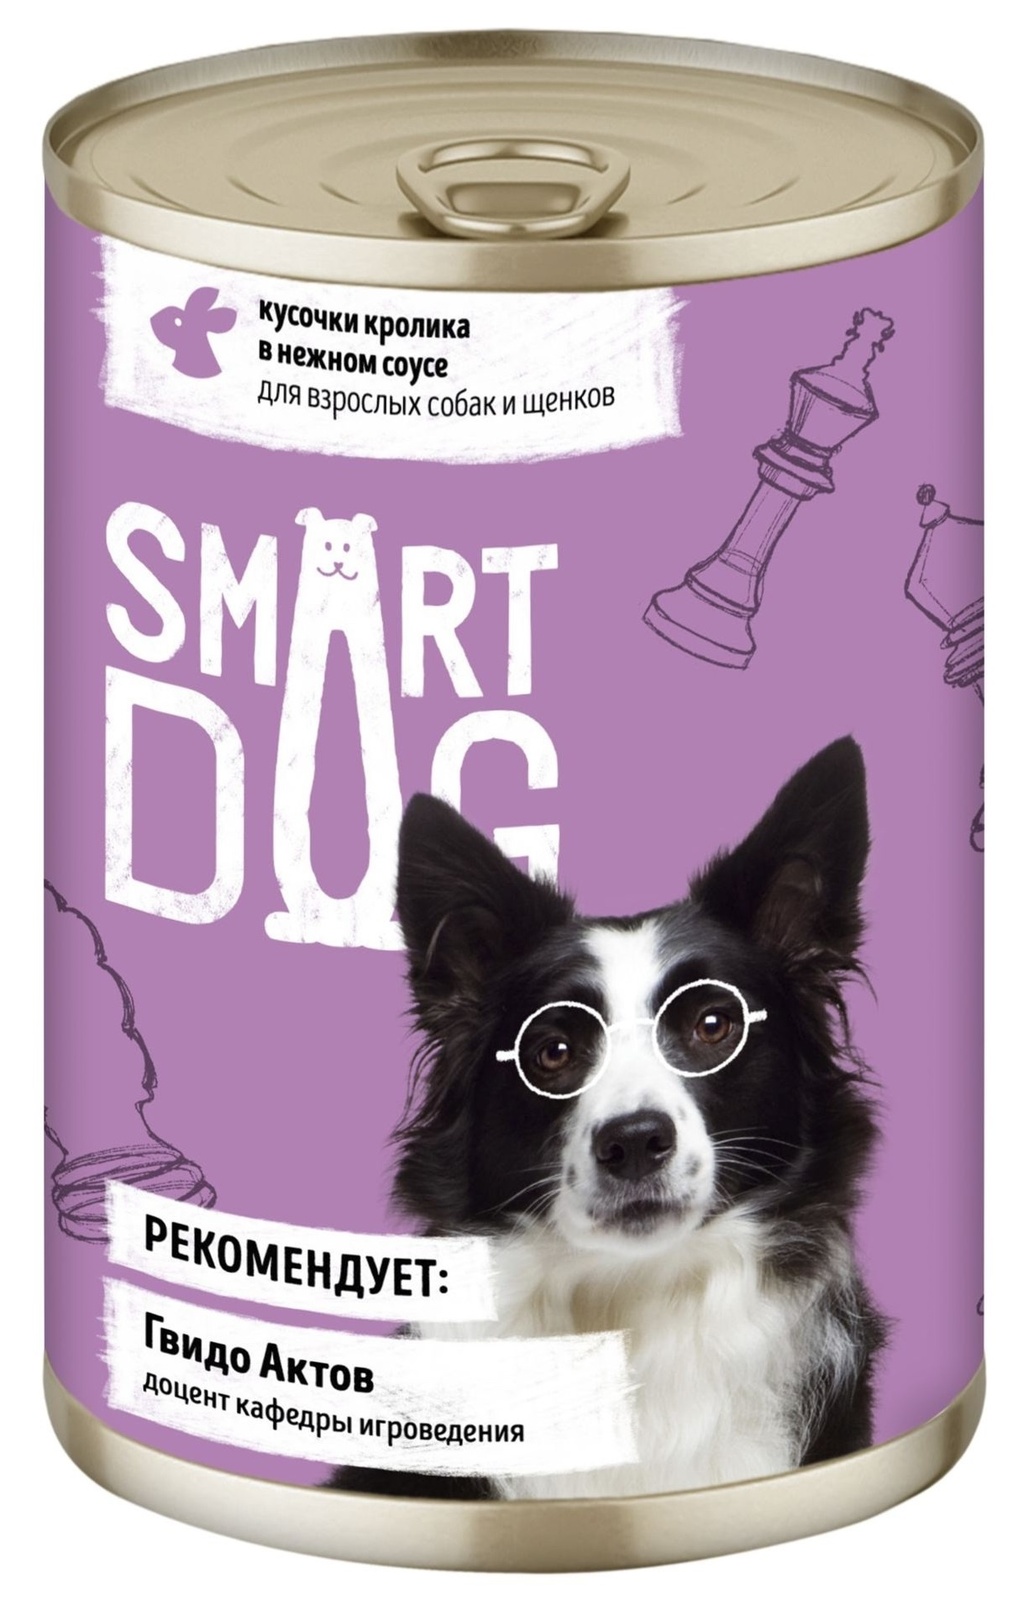 Smart Dog консервы Smart Dog консервы консервы для взрослых собак и щенков кусочки кролика в нежном соусе (400 г)